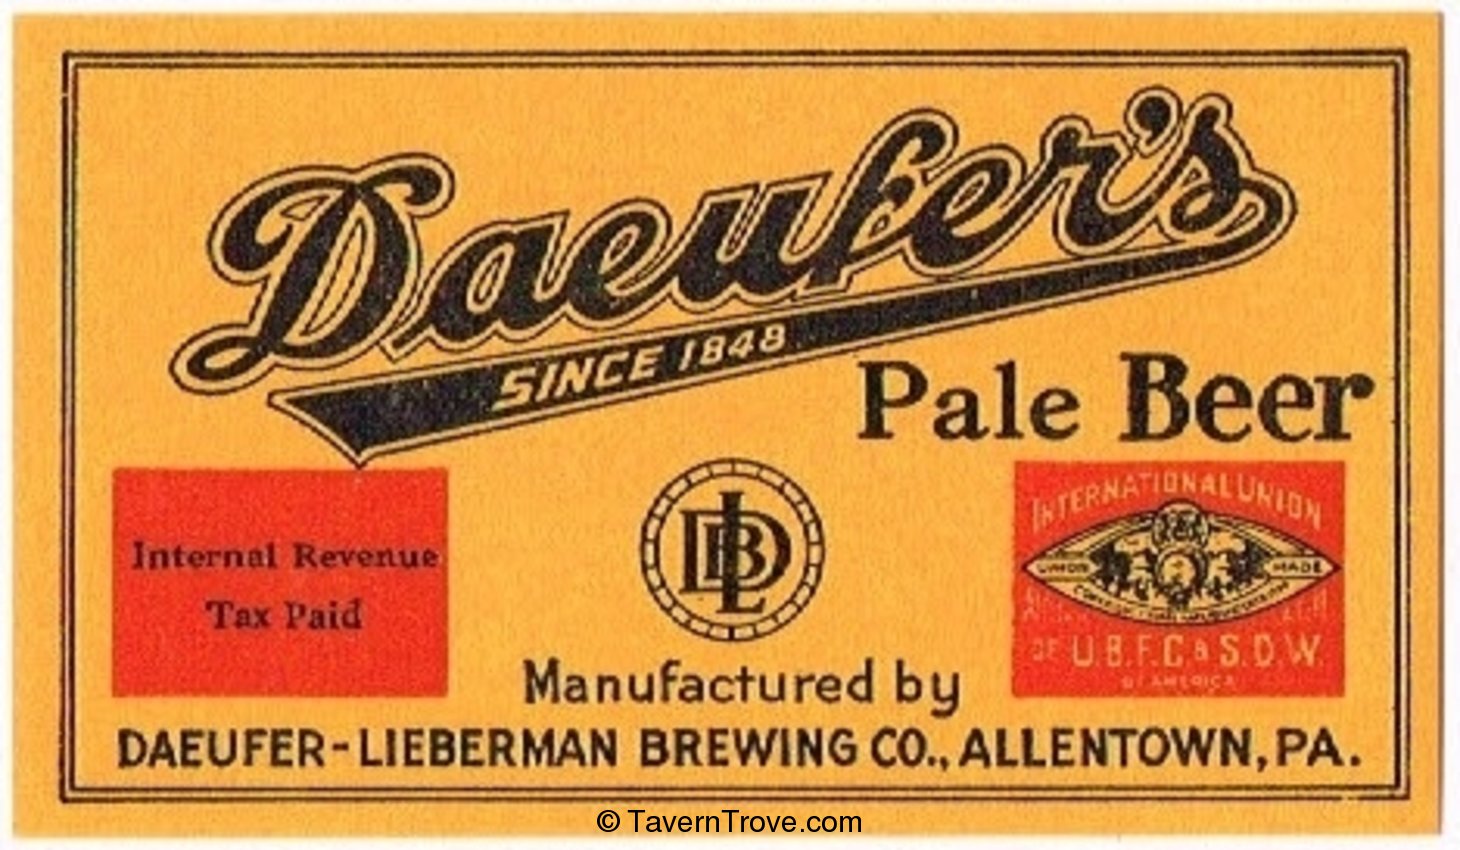 Daeufer's Pale Beer